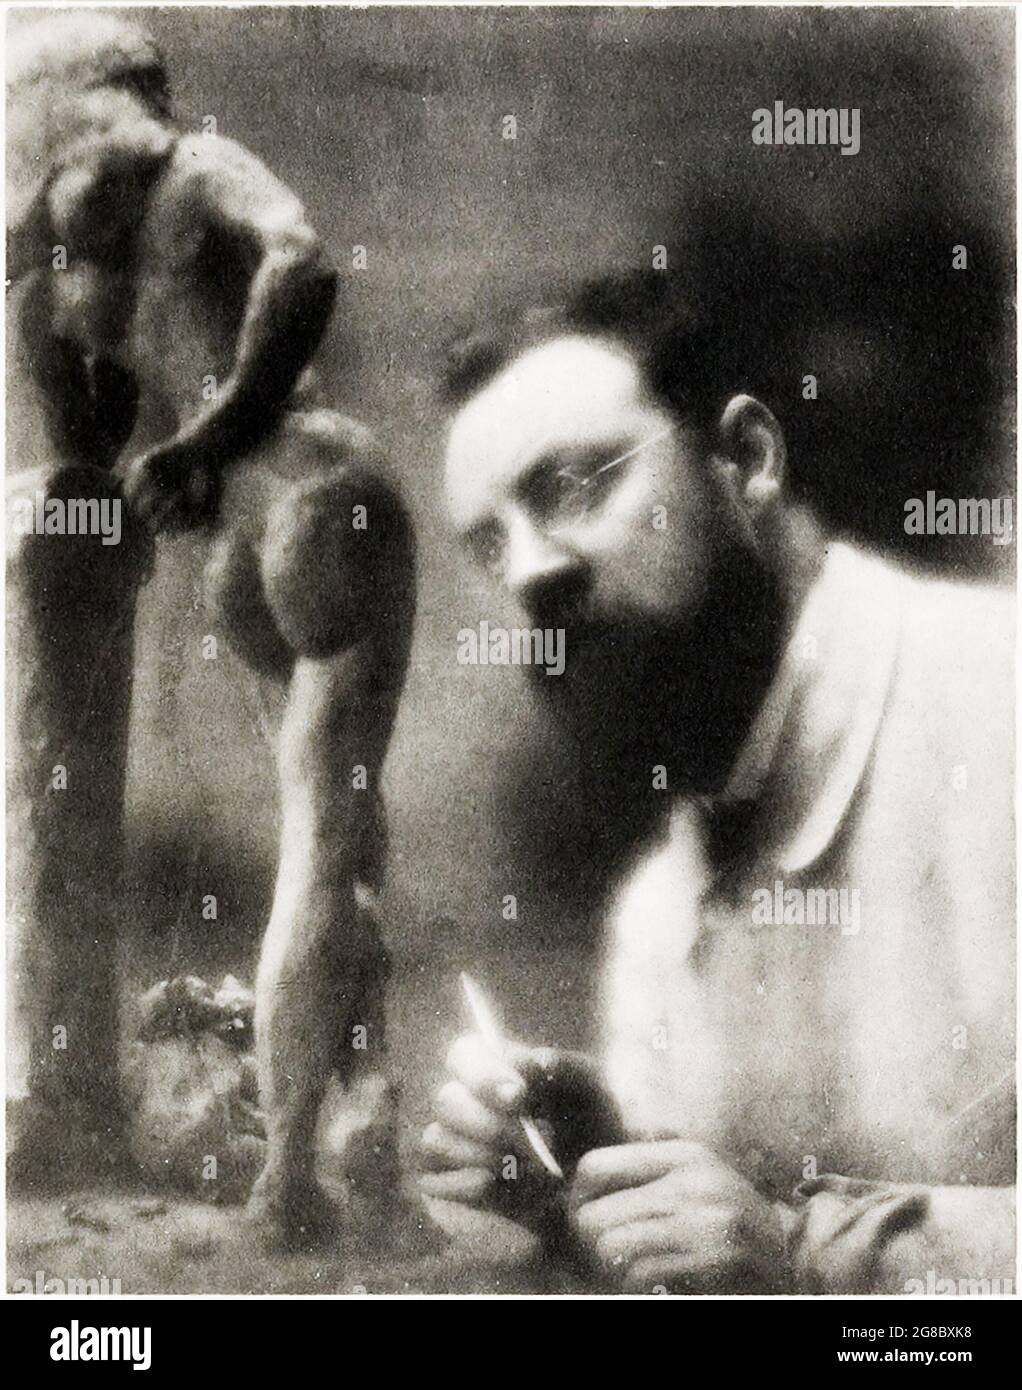 Vecchia foto / ritratto dell'artista famoso in tutto il mondo, Henri Matisse scultura Foto Stock